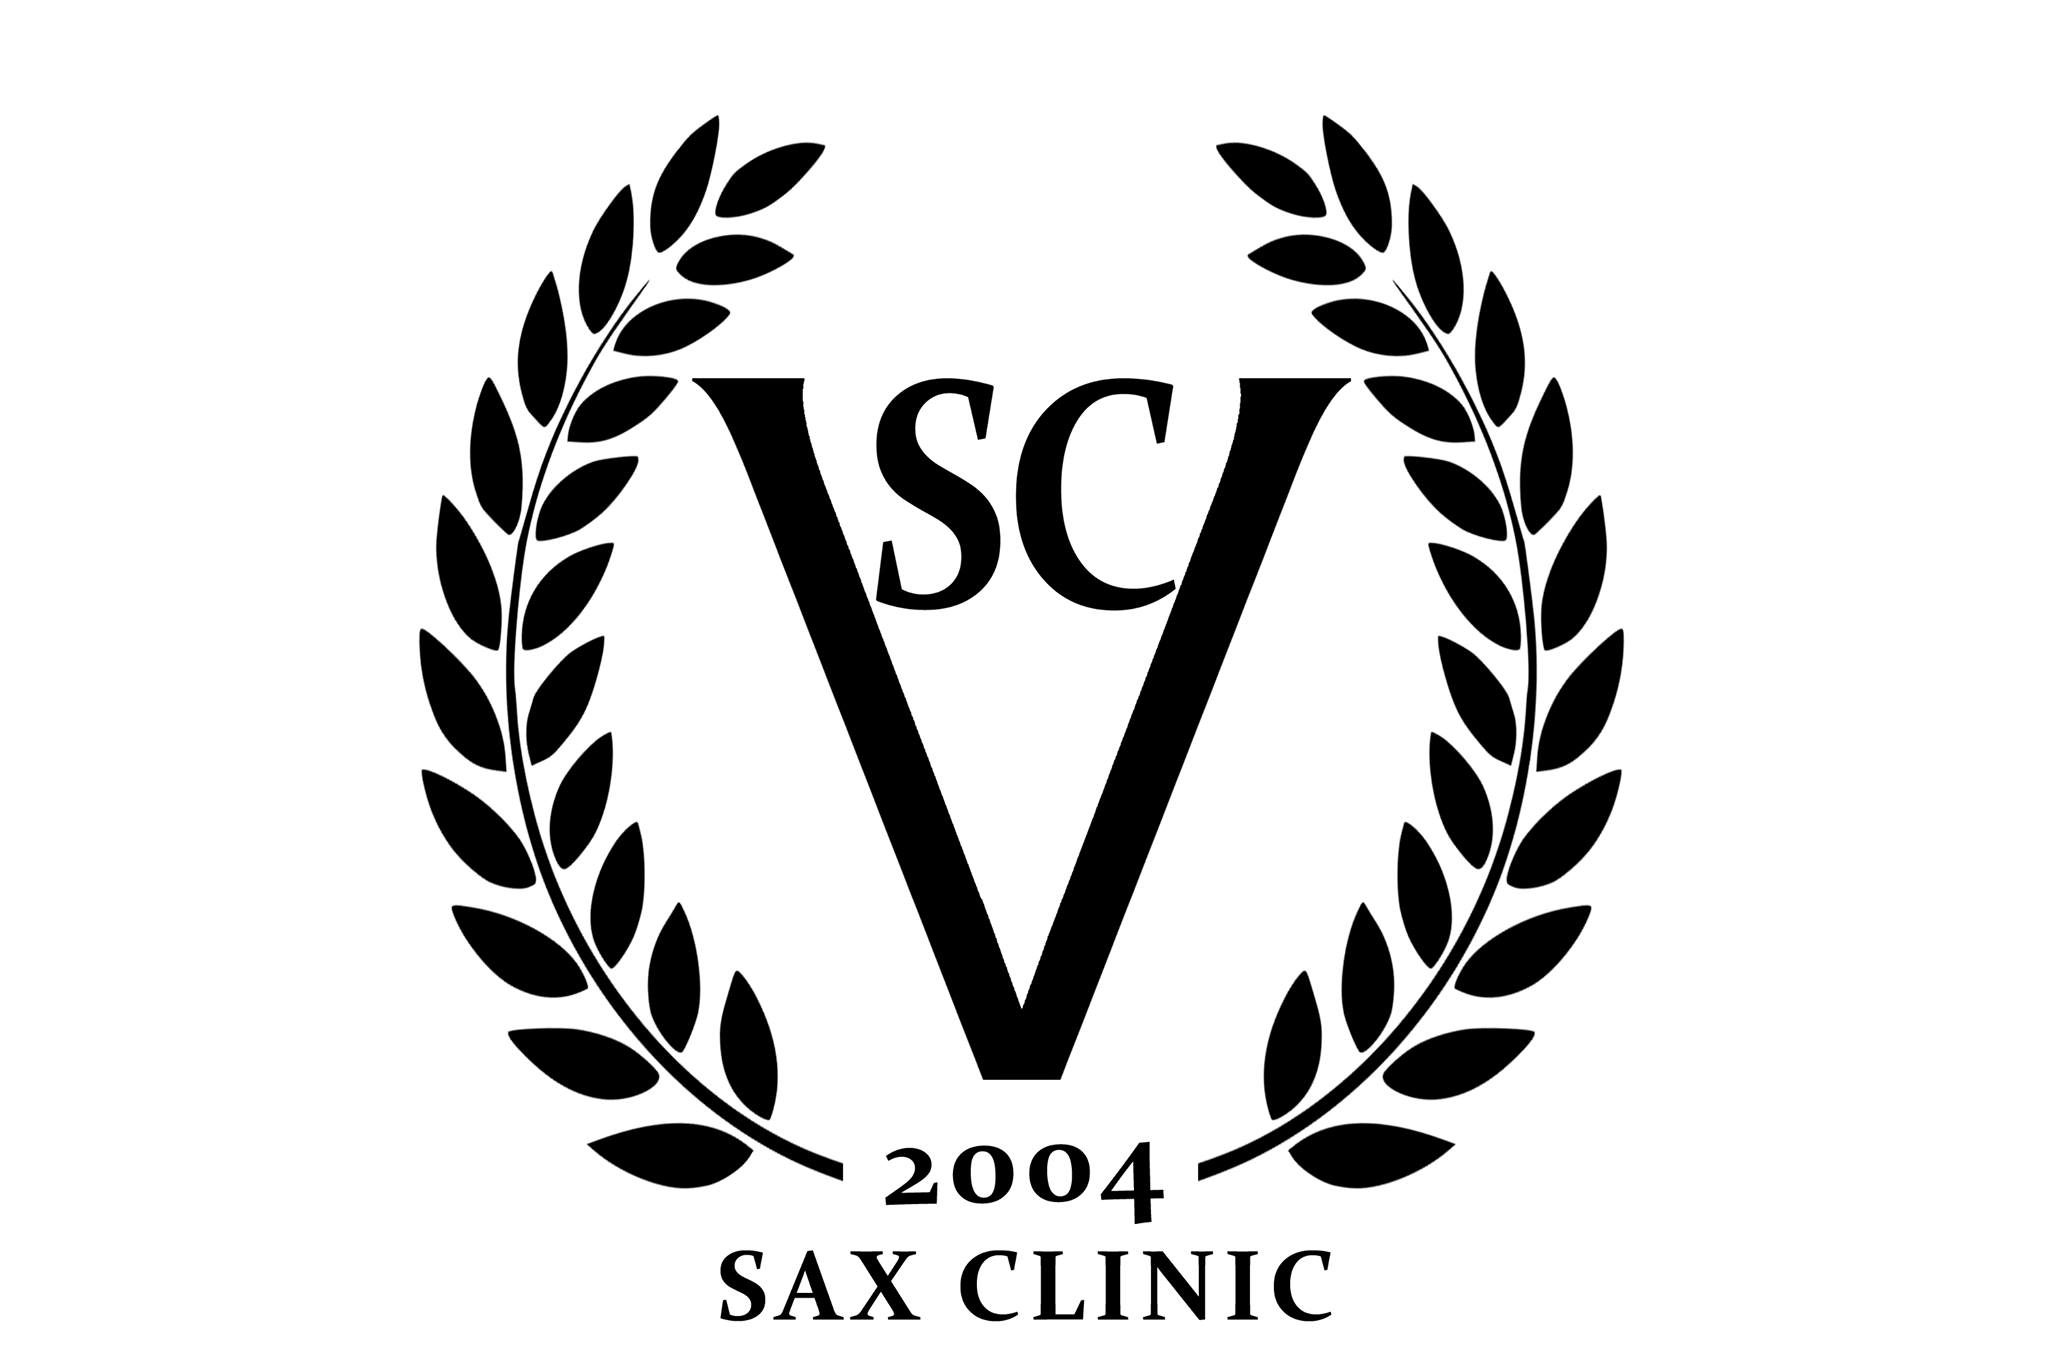 www.saxclinic.com